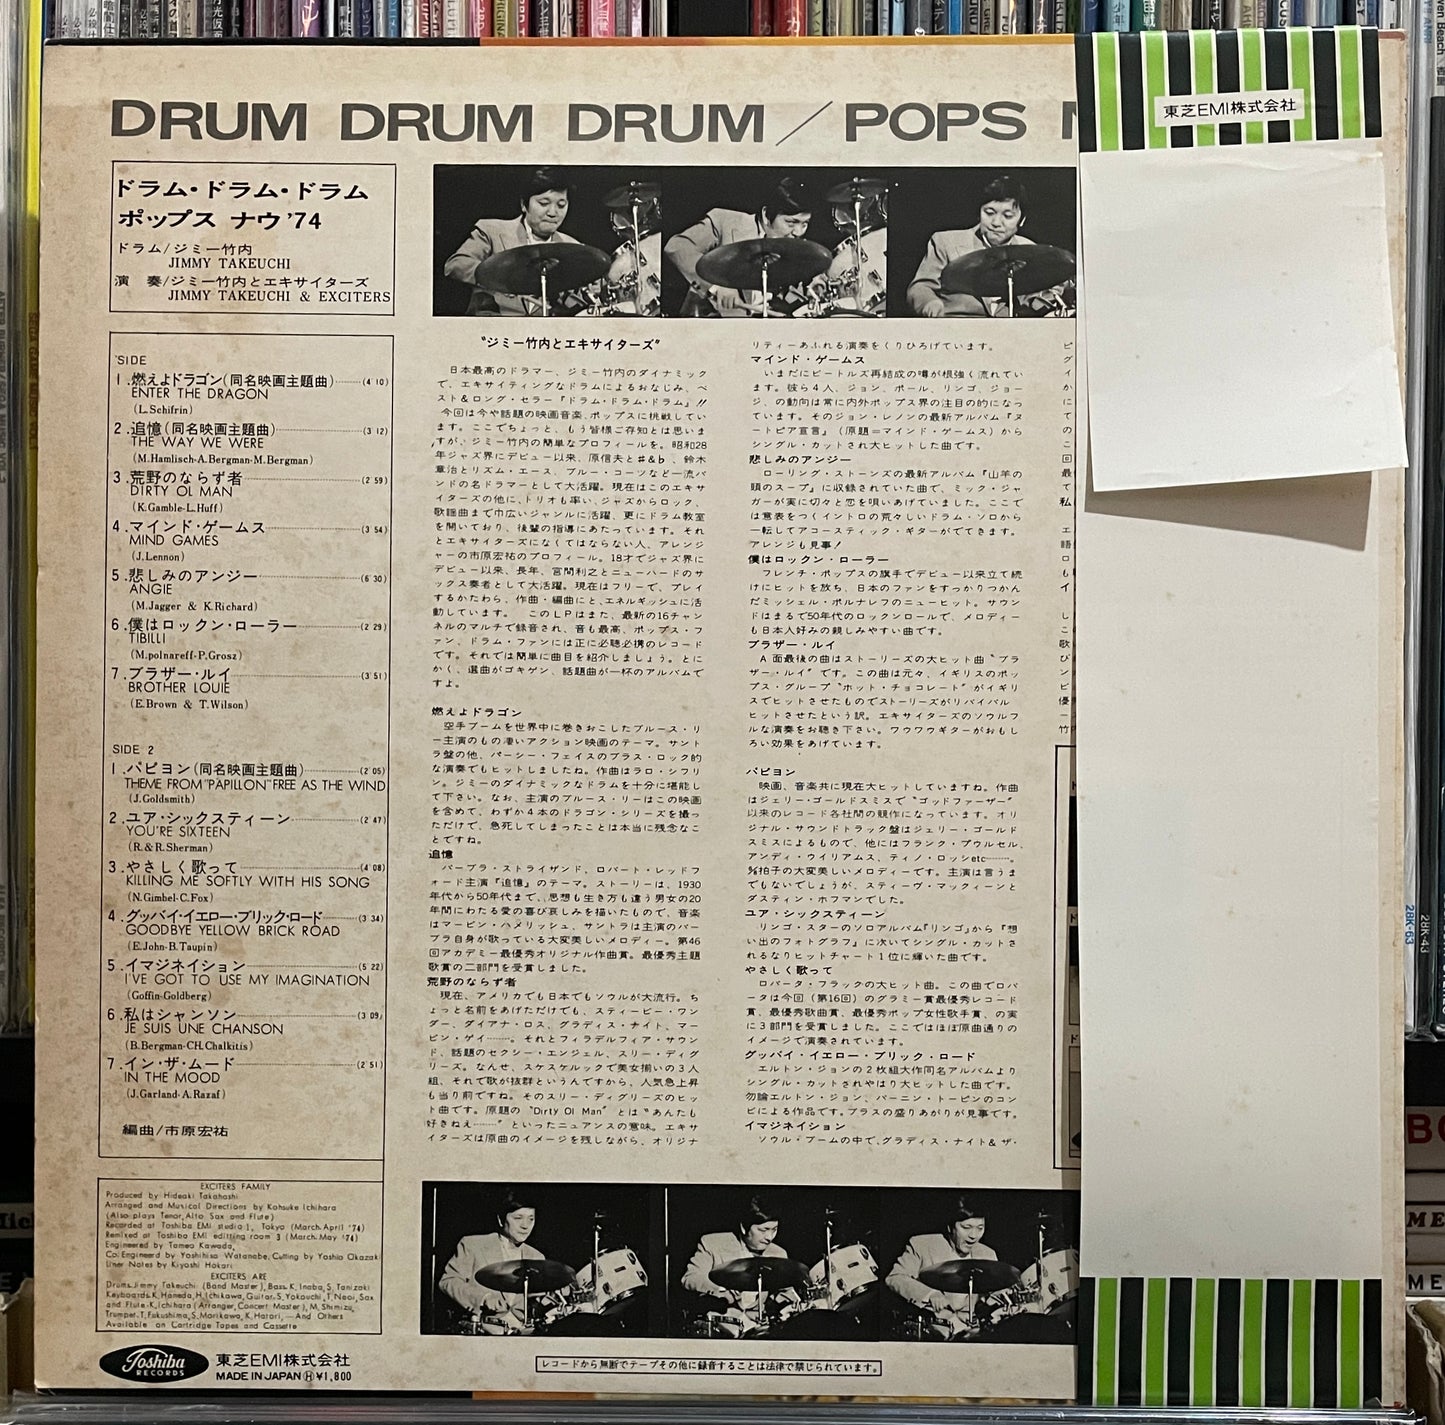 Jimmy Takeuchi “Drum, Drum, Drum” (1974)